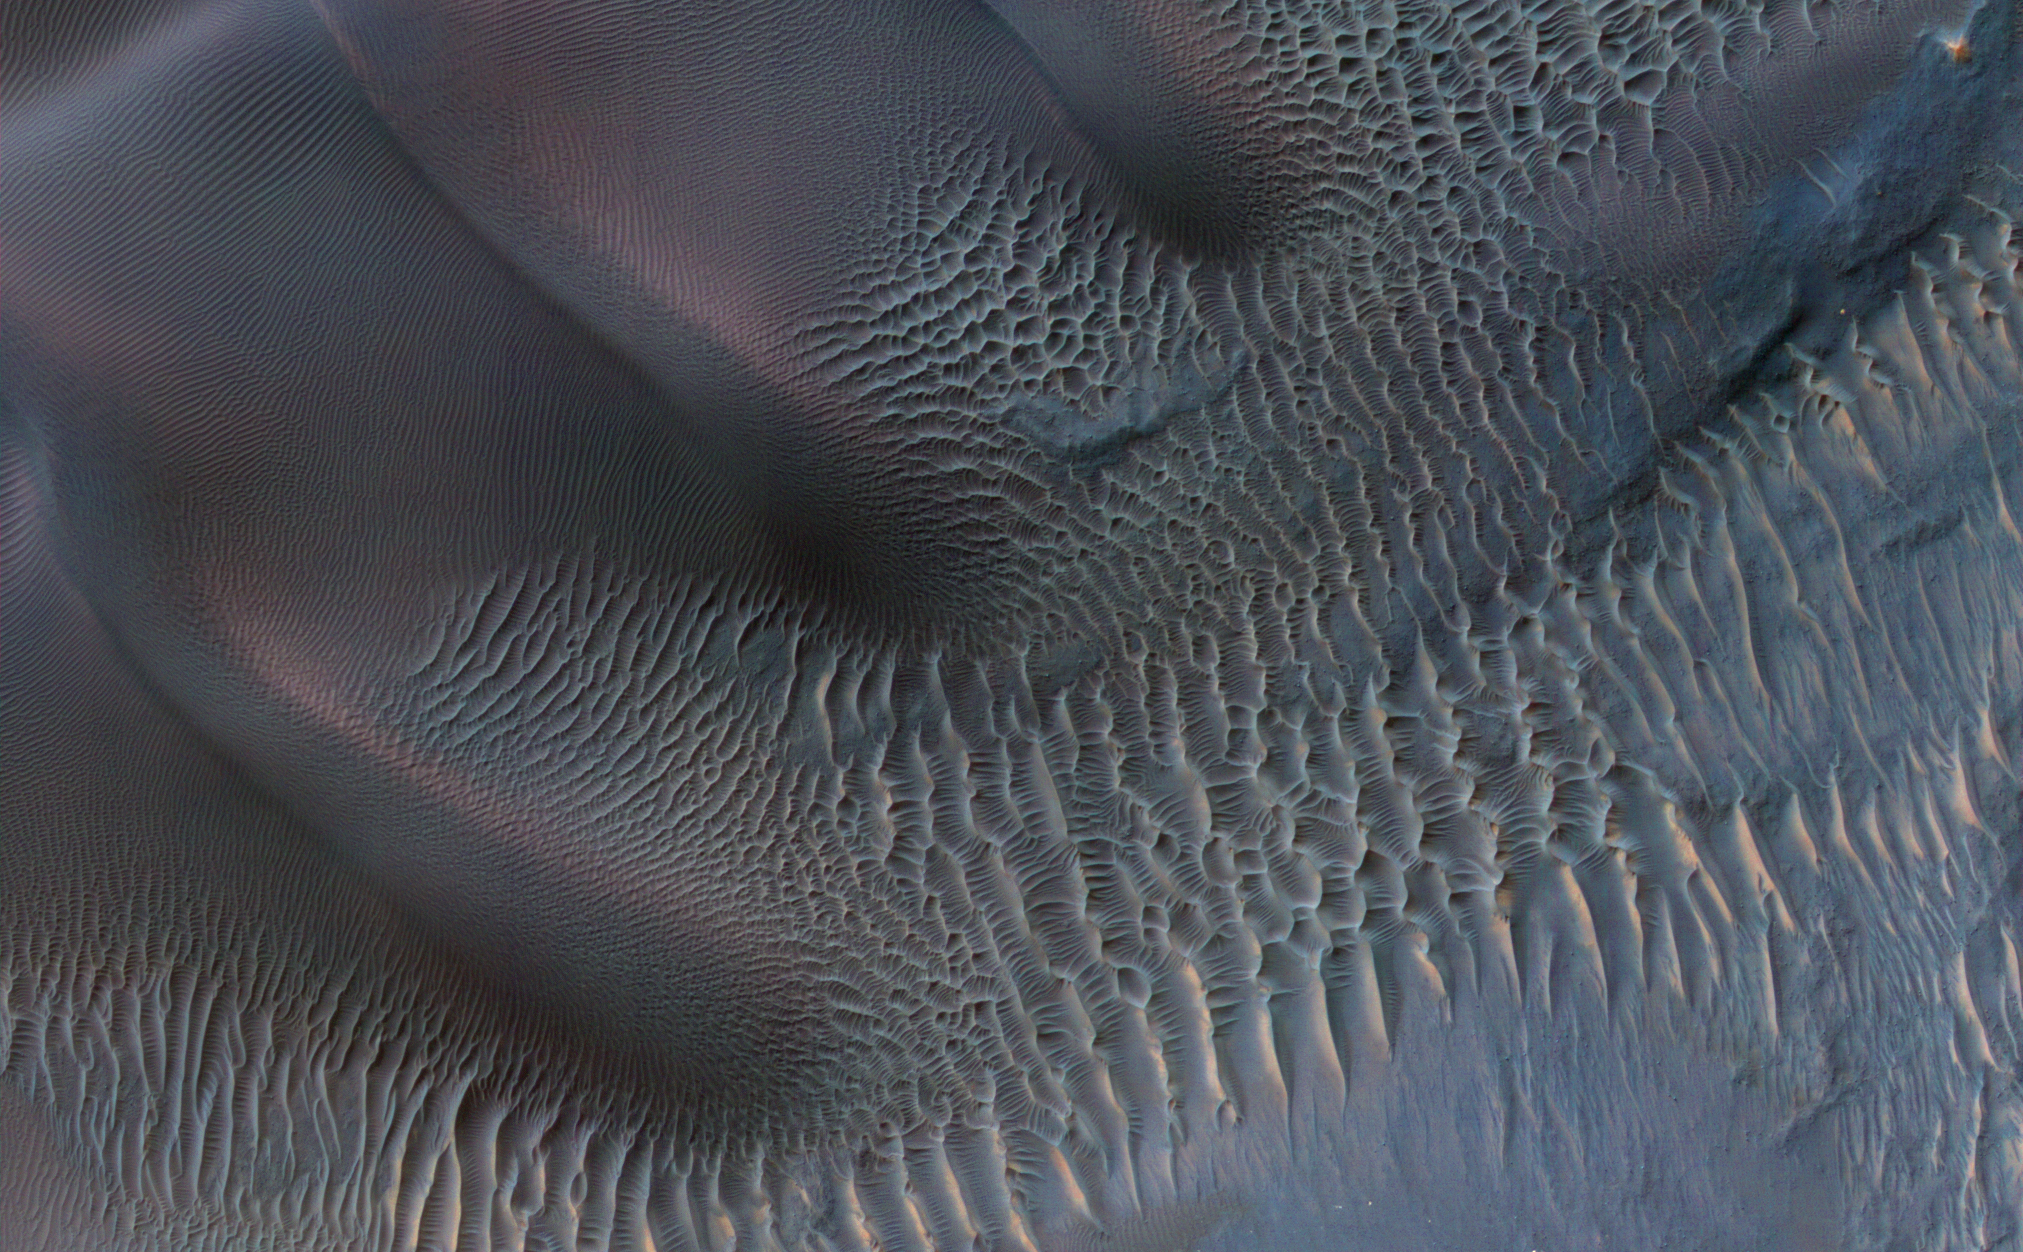 Dunes in Noachis Terra Region of Mars